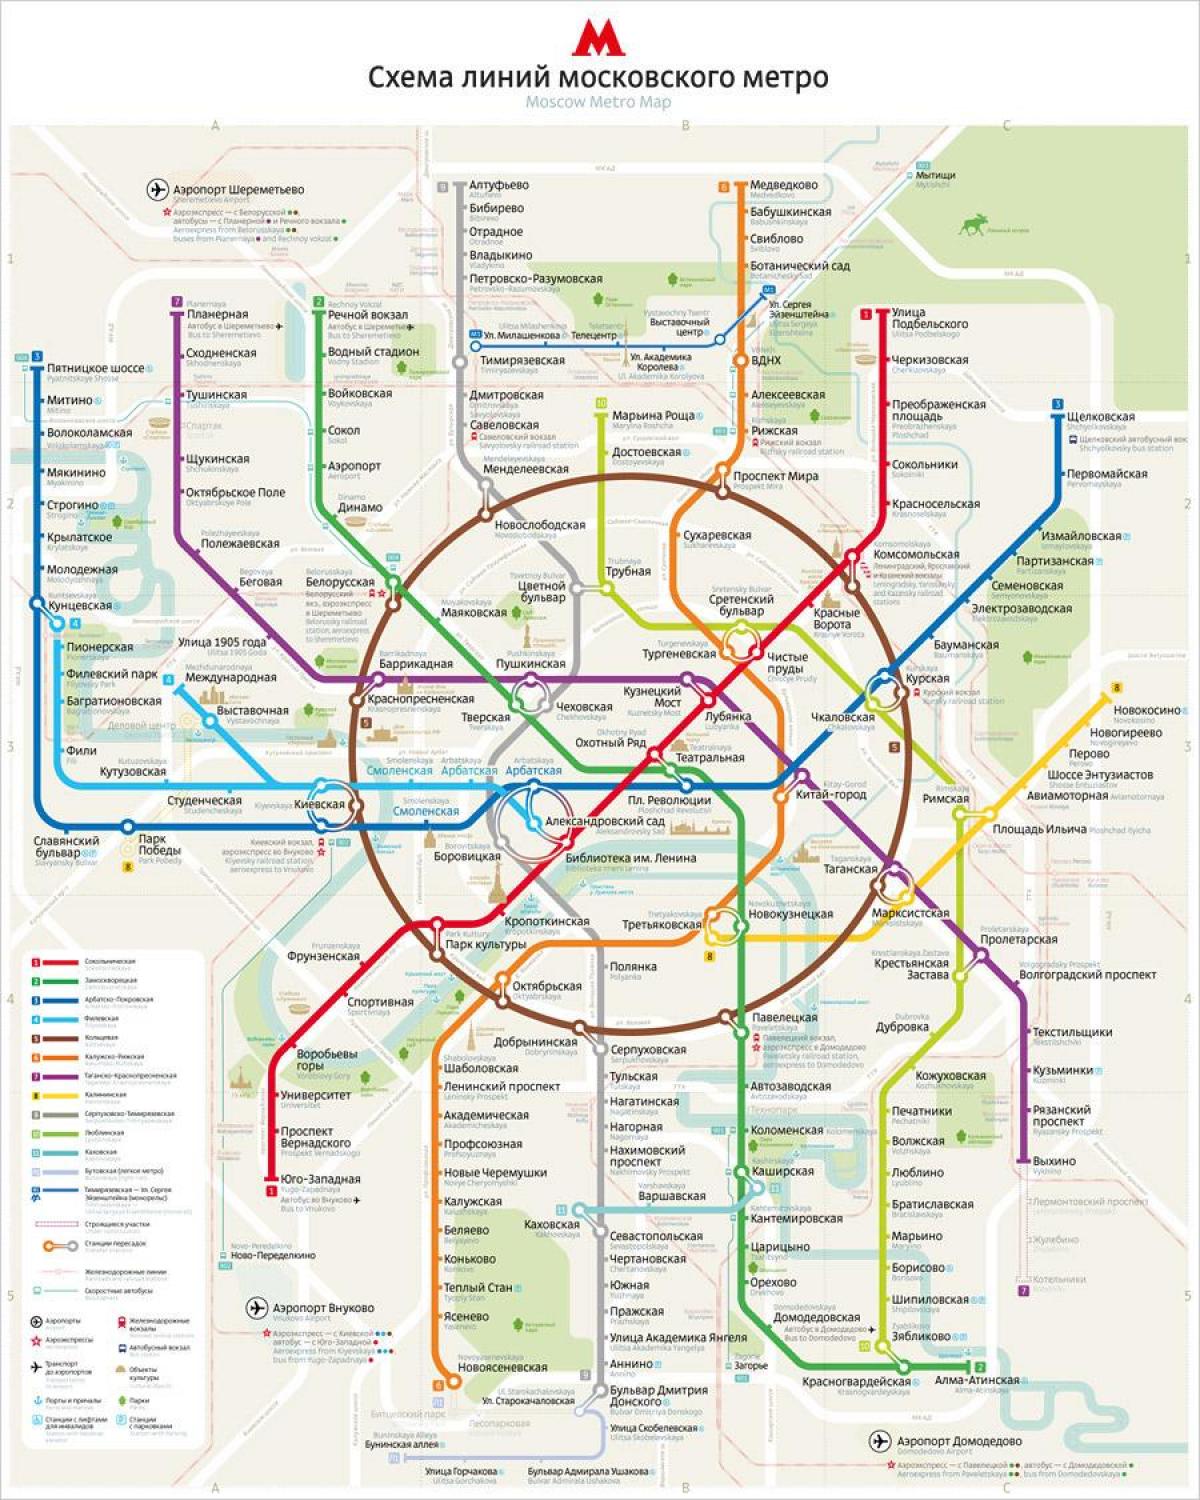 نقشه از مترو مسکو زبان انگلیسی و روسی